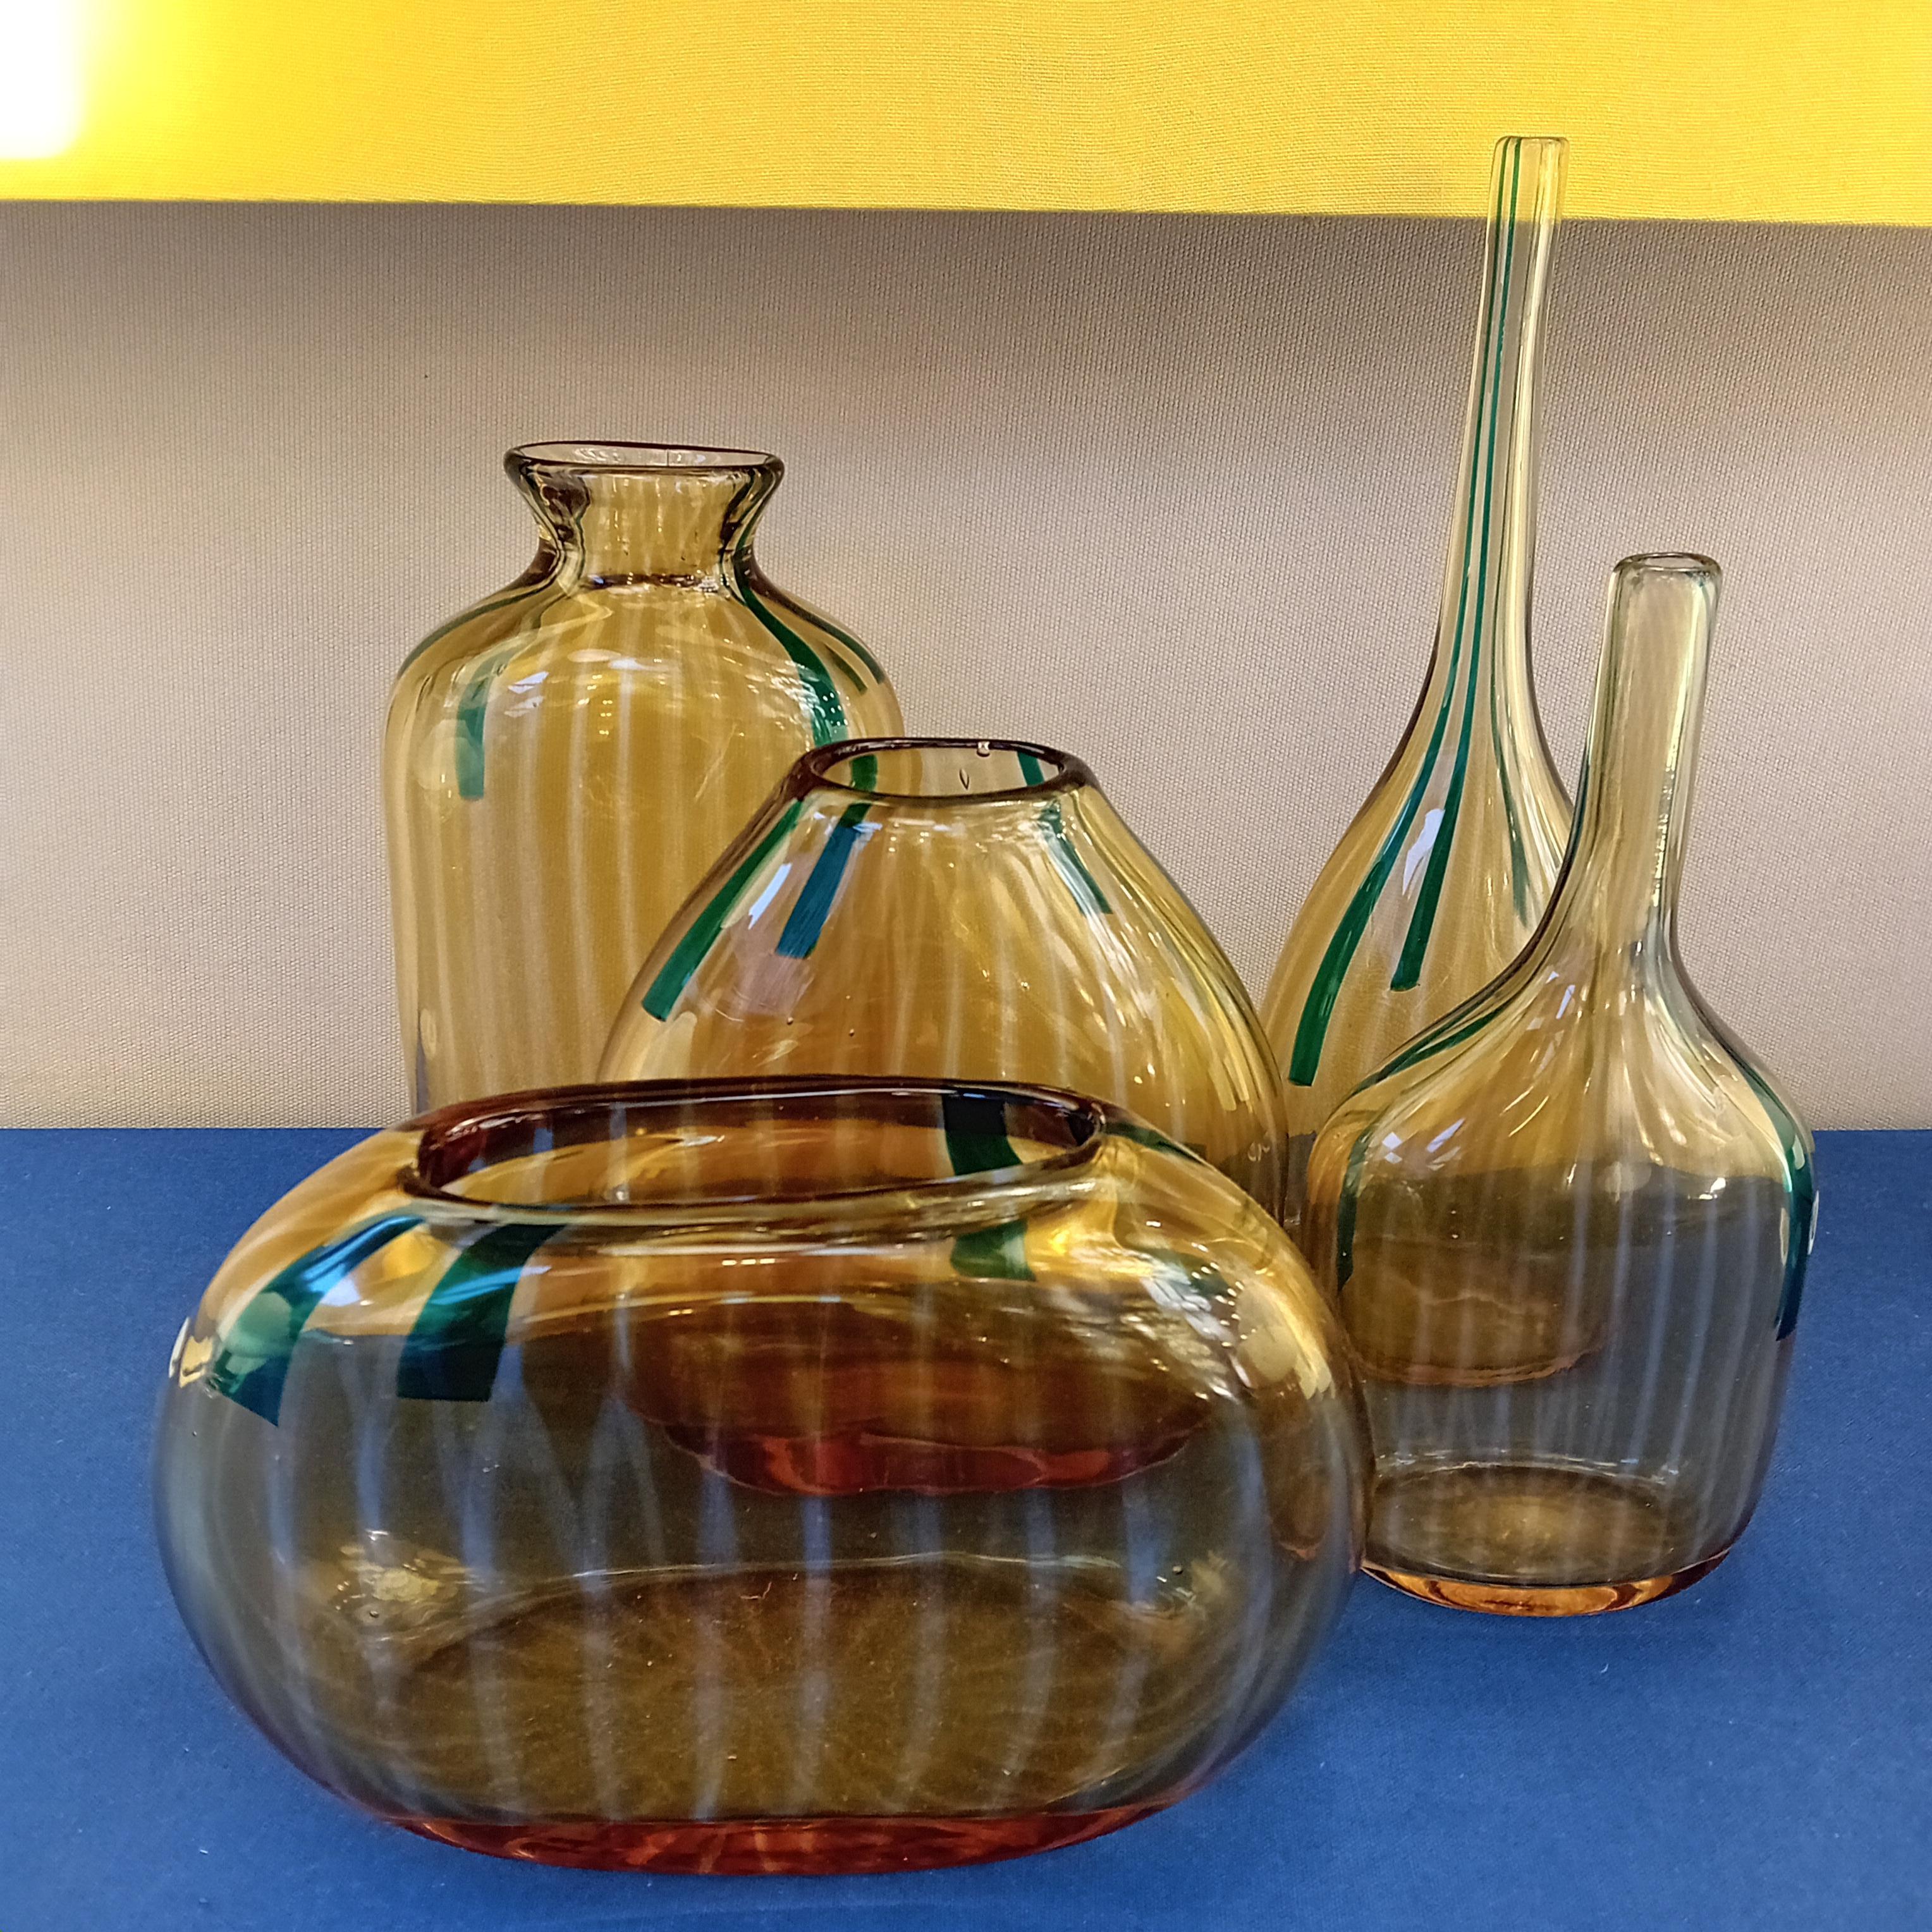 Cet ensemble de cinq vases a été conçu par Sergio Asti en 1963 et présenté à la XXXIIe Biennale de Venise. La série s'appelle Calle et se compose de vases dentelés faits de cannes de verre fondu.
Couleur : orange, translucide et vert antique

Biblio